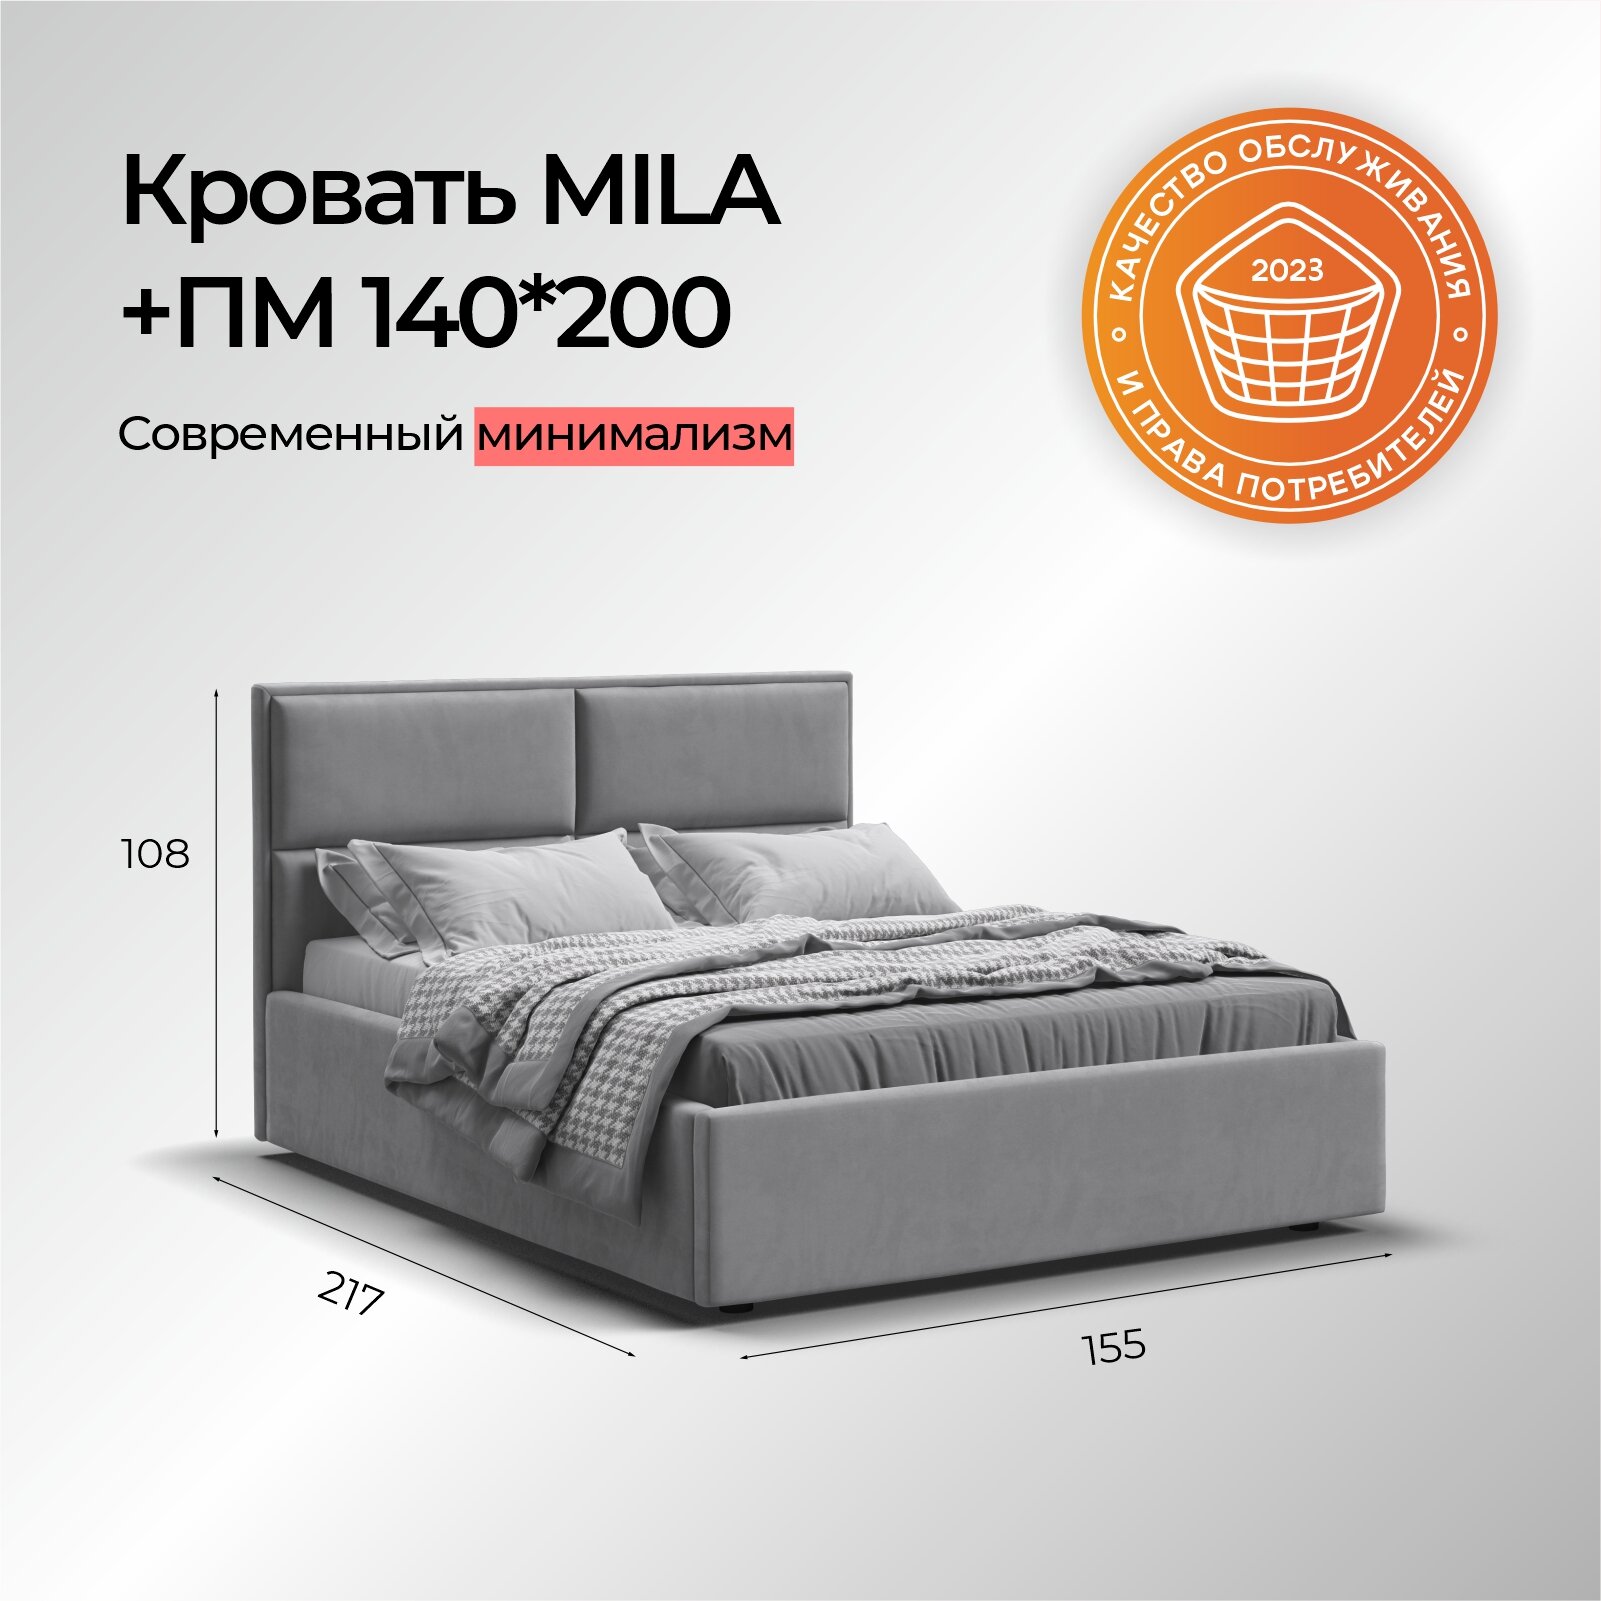 Двуспальная кровать MILA, с подъемным механизмом, велюр Monolit сталь, спальное место 140х200 см